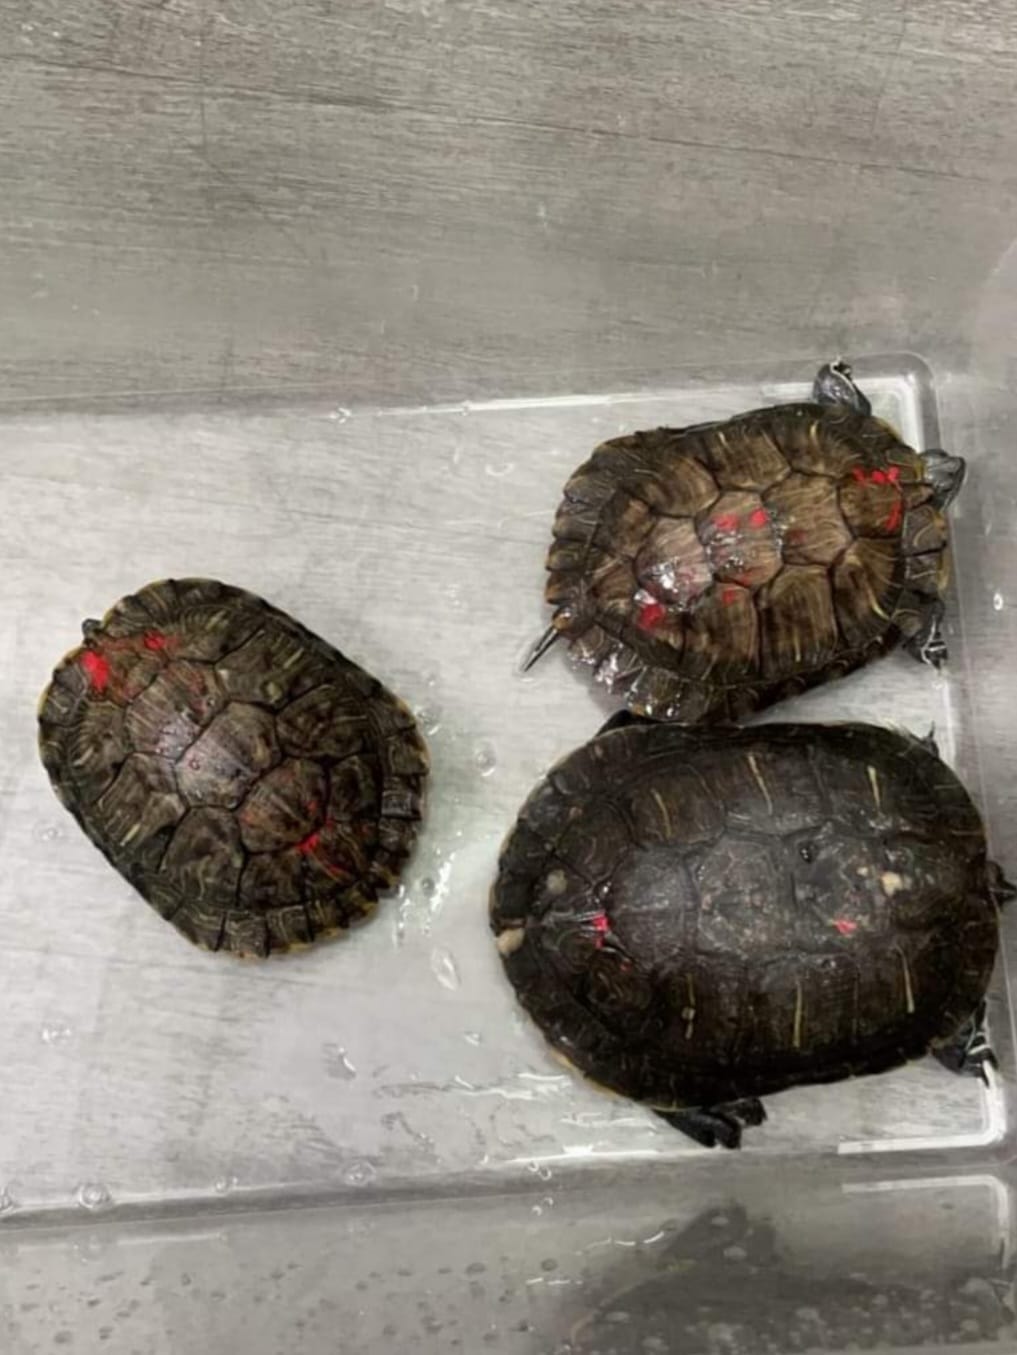 有团体即场拯救被放入海的淡水巴西龟。香港两栖及爬虫协会提供图片